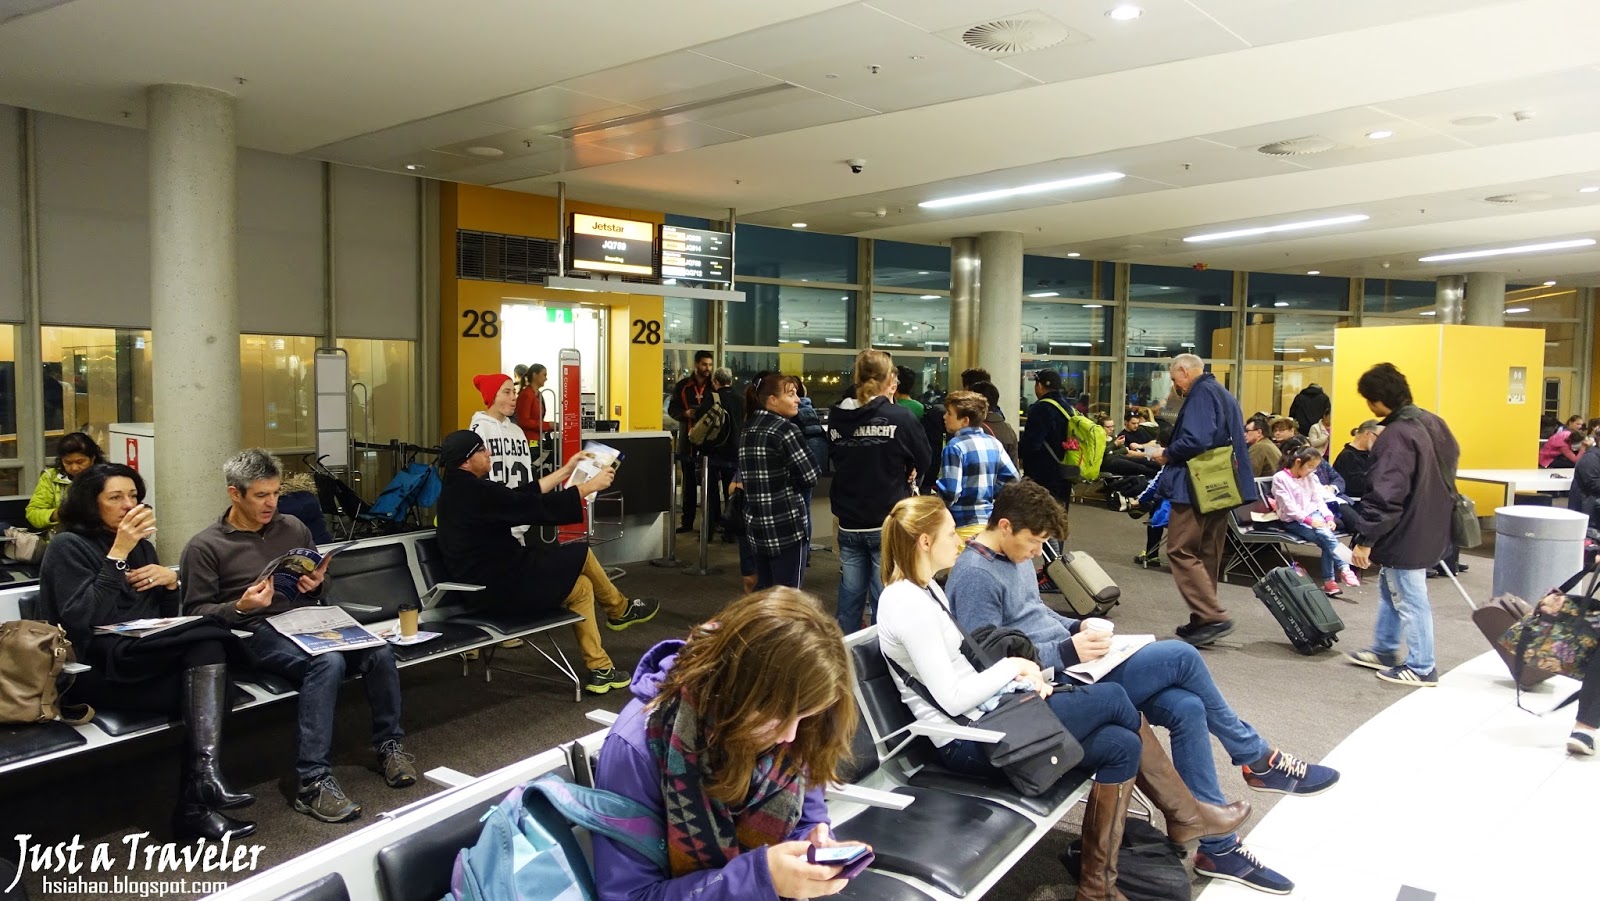 澳洲-廉航-廉價航空-布里斯本機場-國內線機場-塔斯馬尼亞-荷伯特機場-捷星-維珍-機票-訂票-Australia-Budget-Airline-Brisbane-Tasmania-Airport-Jetstar-Virgin